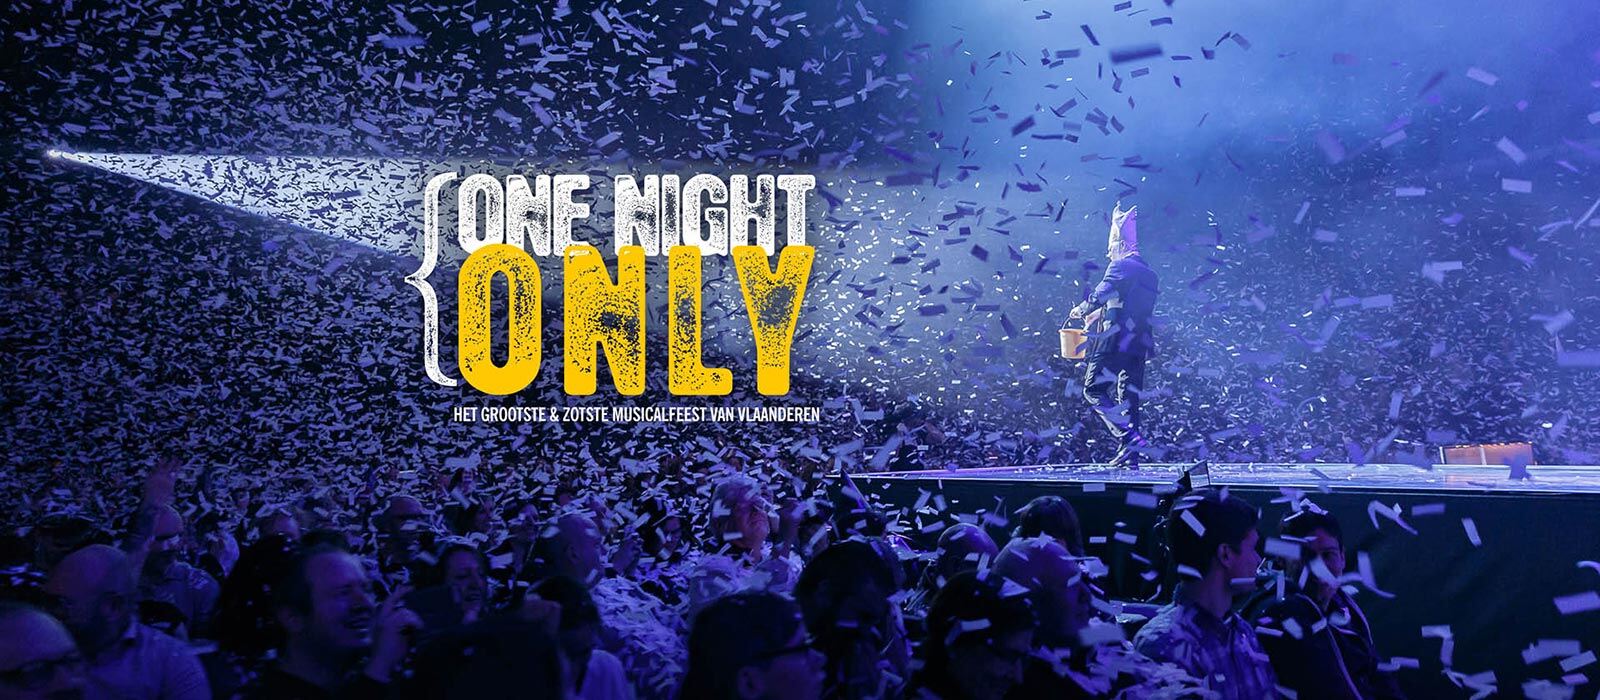 Regardez "One Night Only"